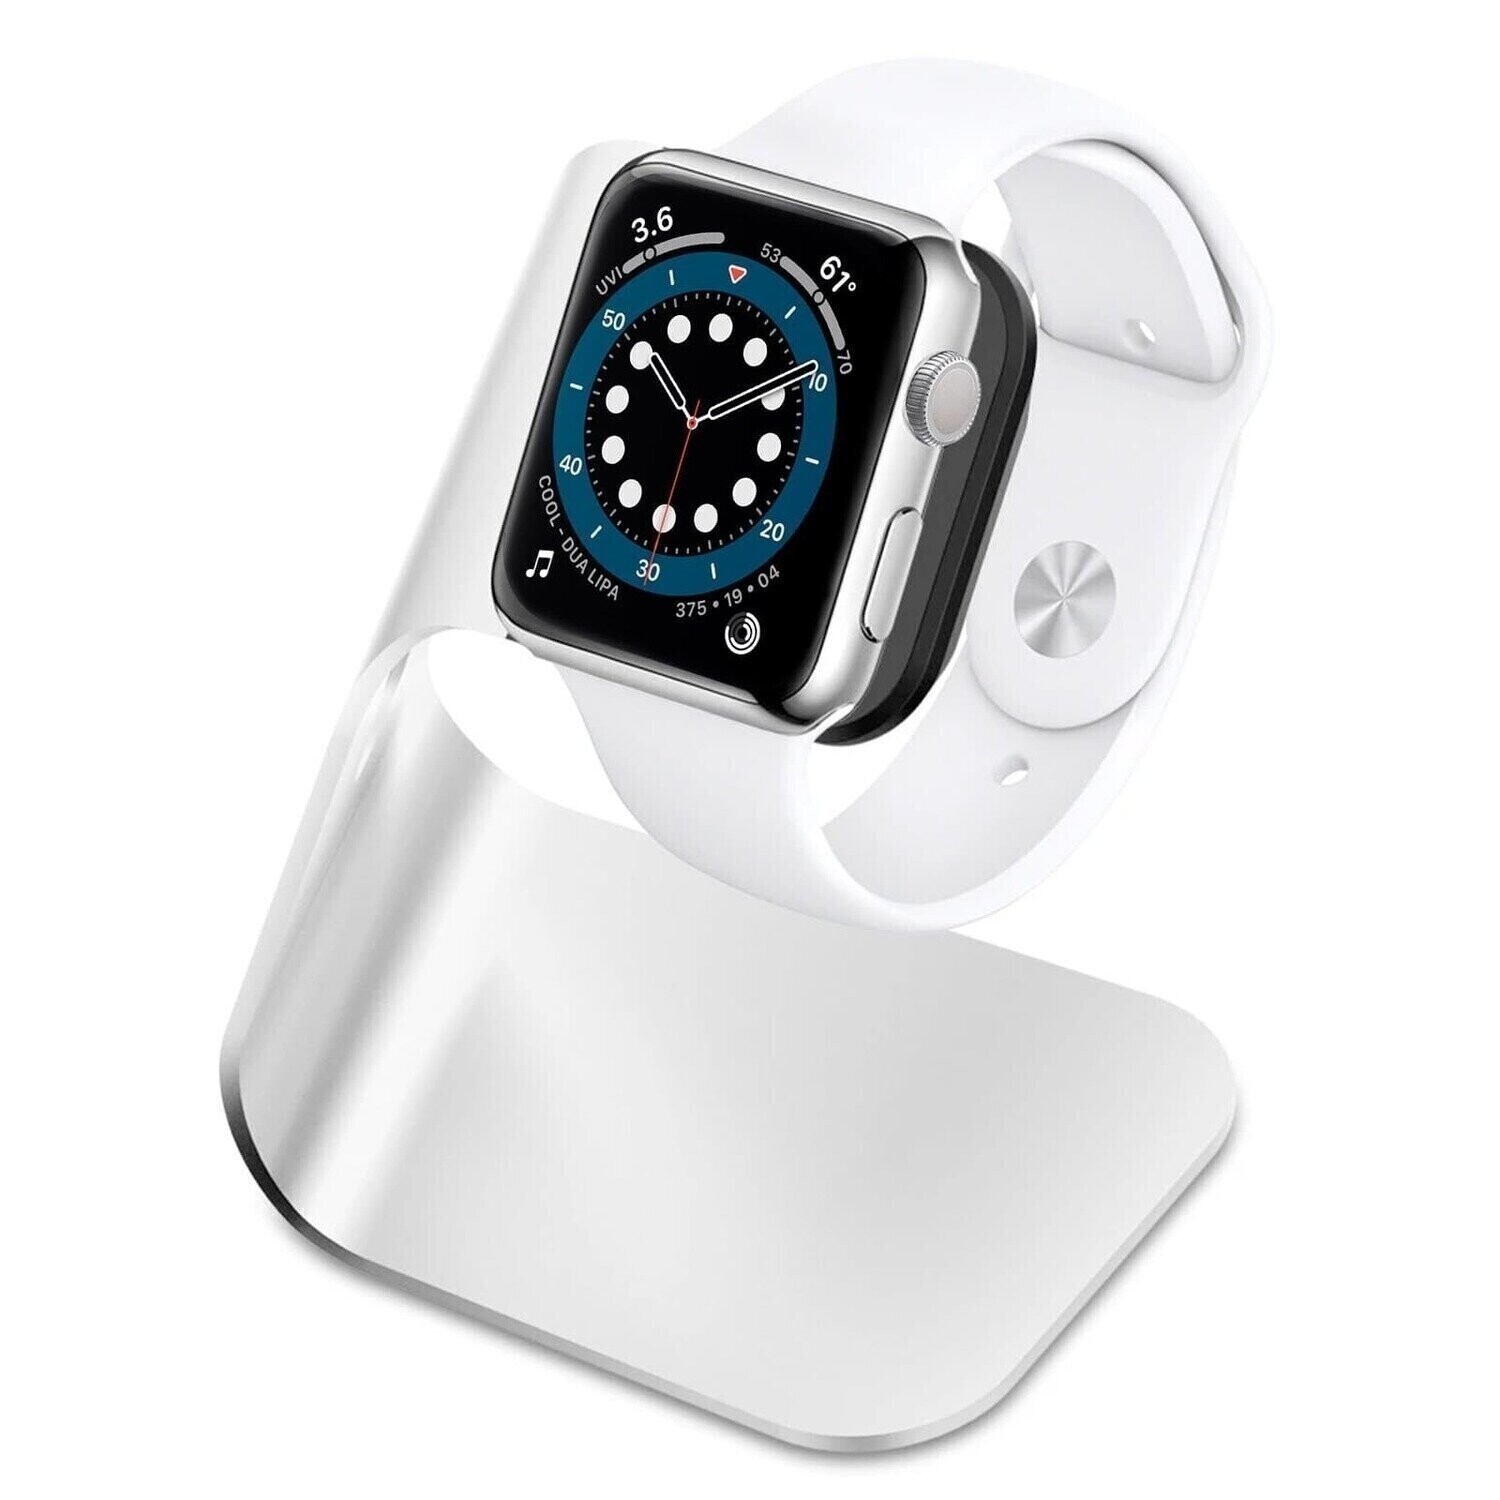 Spigen Apple Watch S330 Stand (SGP11555)